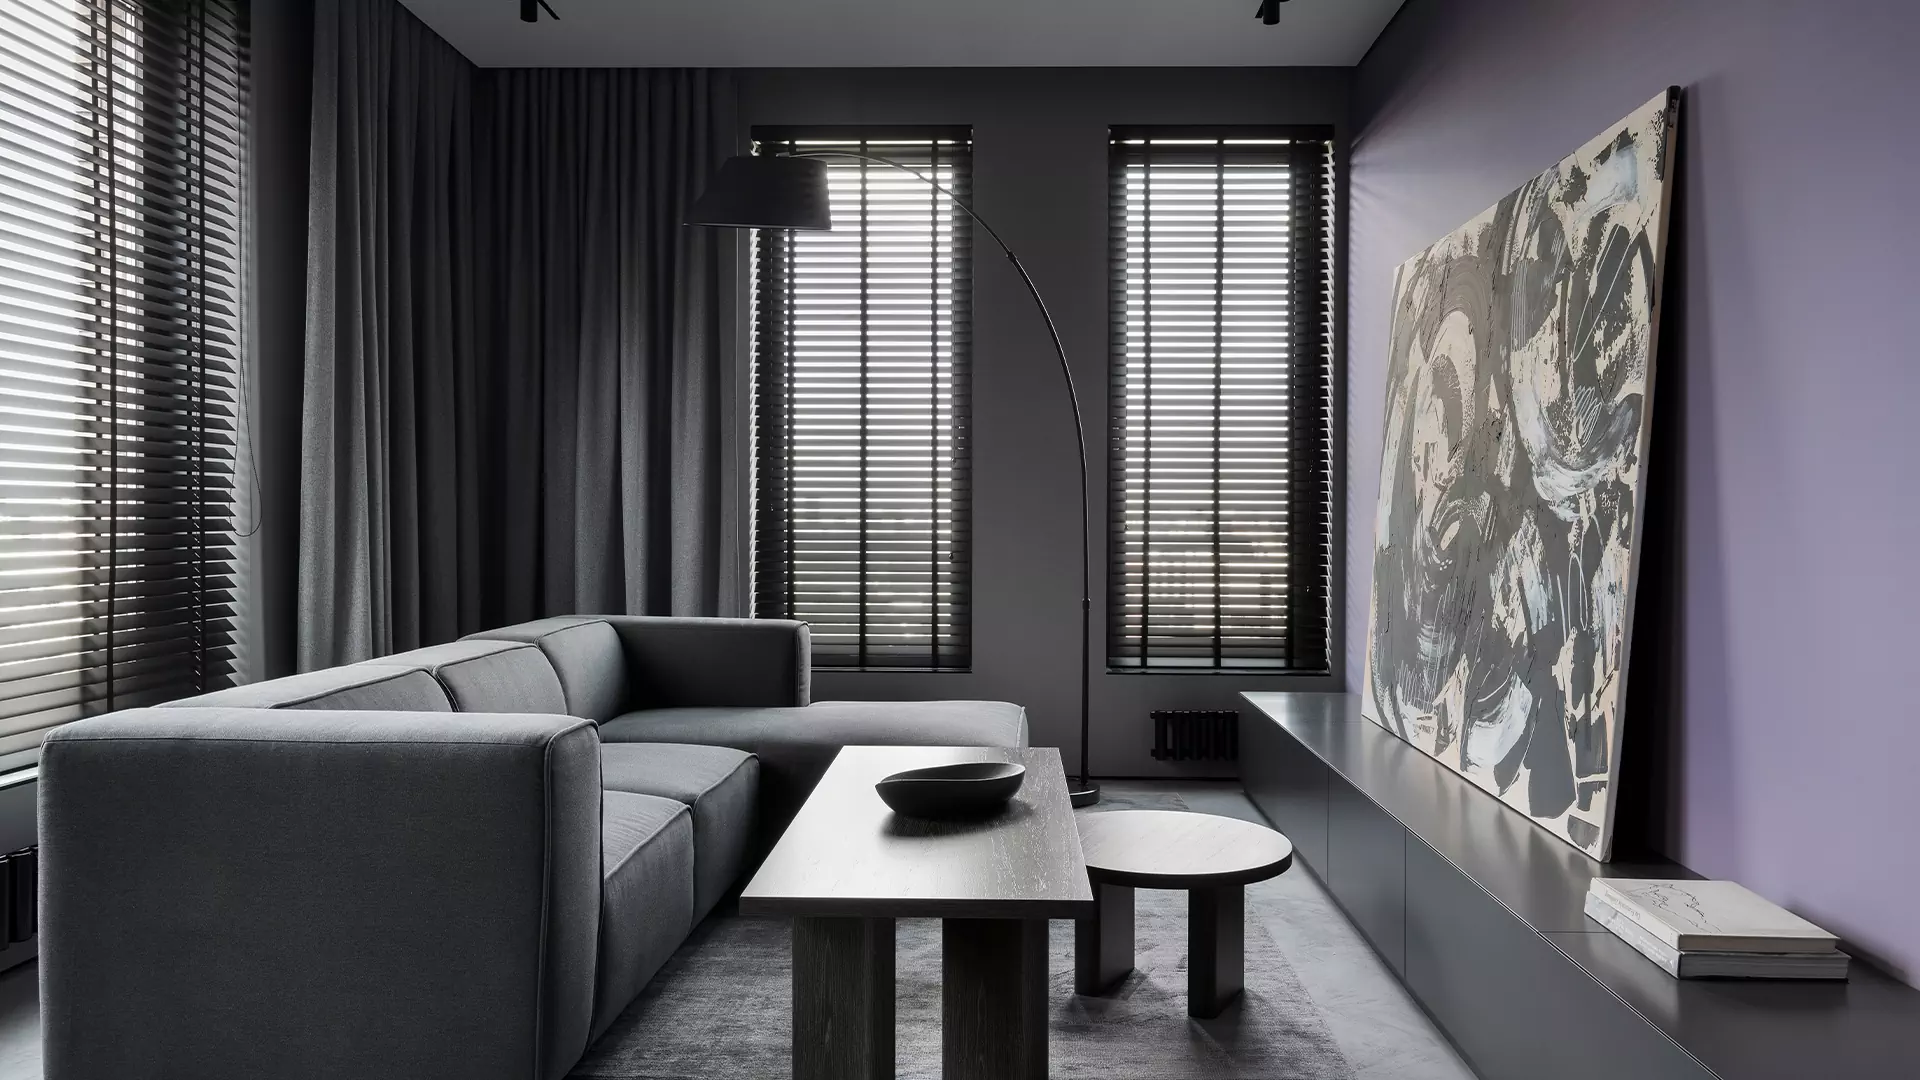 Темный интерьер квартиры, наполненной естественным светом — проект студии дизайна BALCON